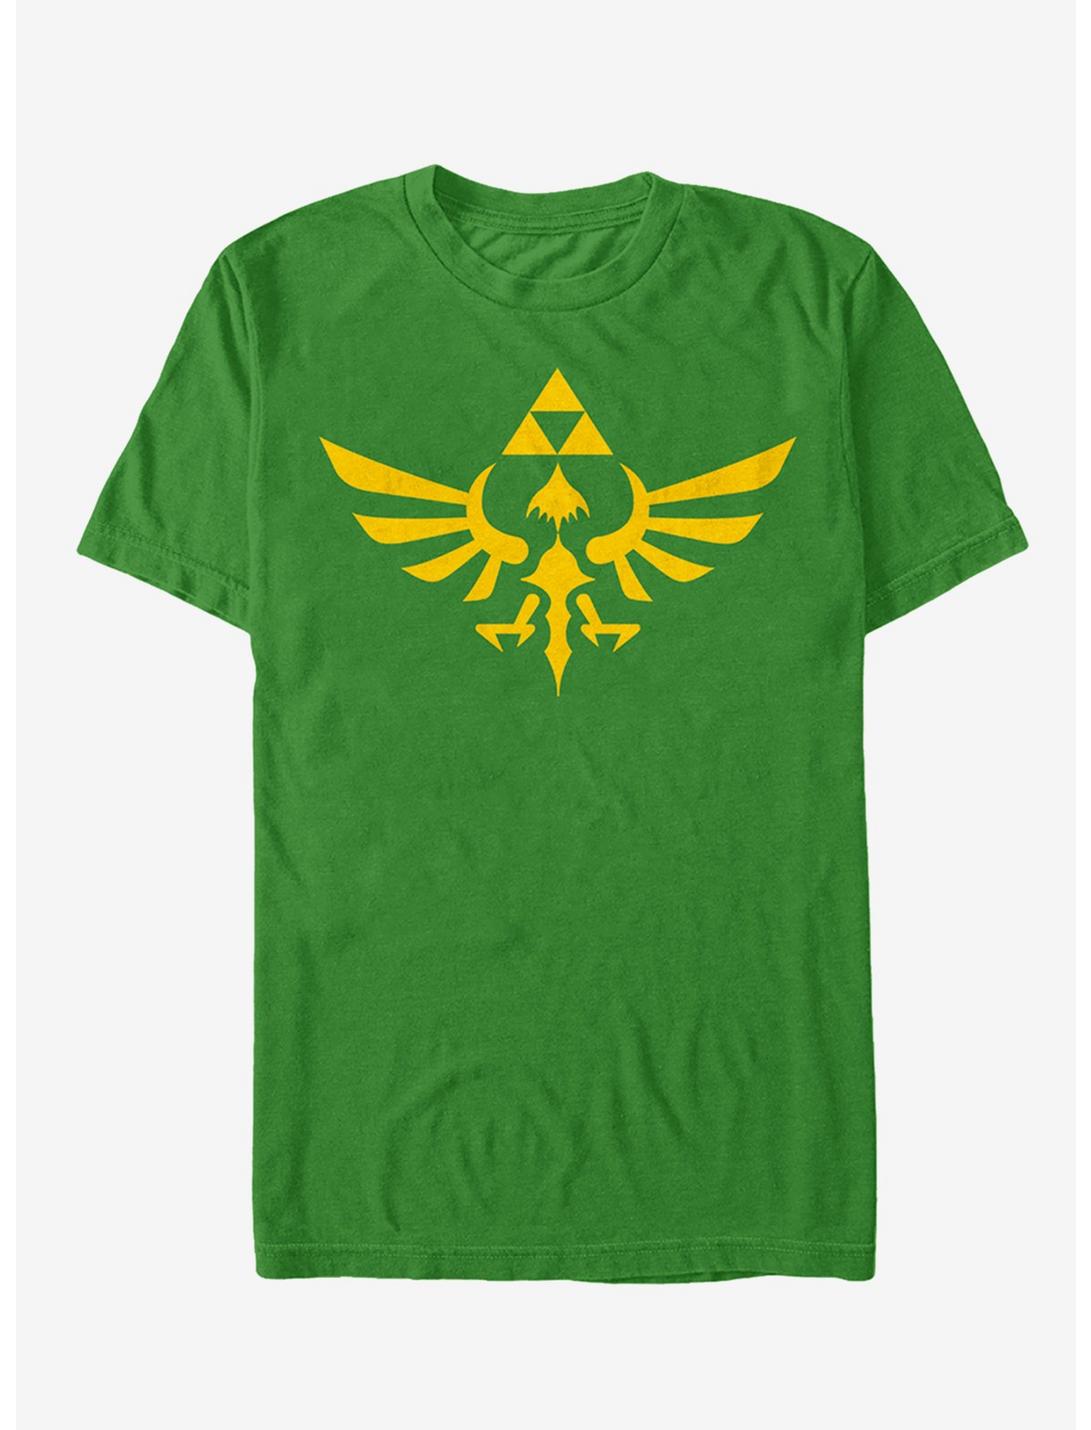 Extra Soft The Legend of Zelda Triumphant Triforce T-Shirt, KELLY, hi-res